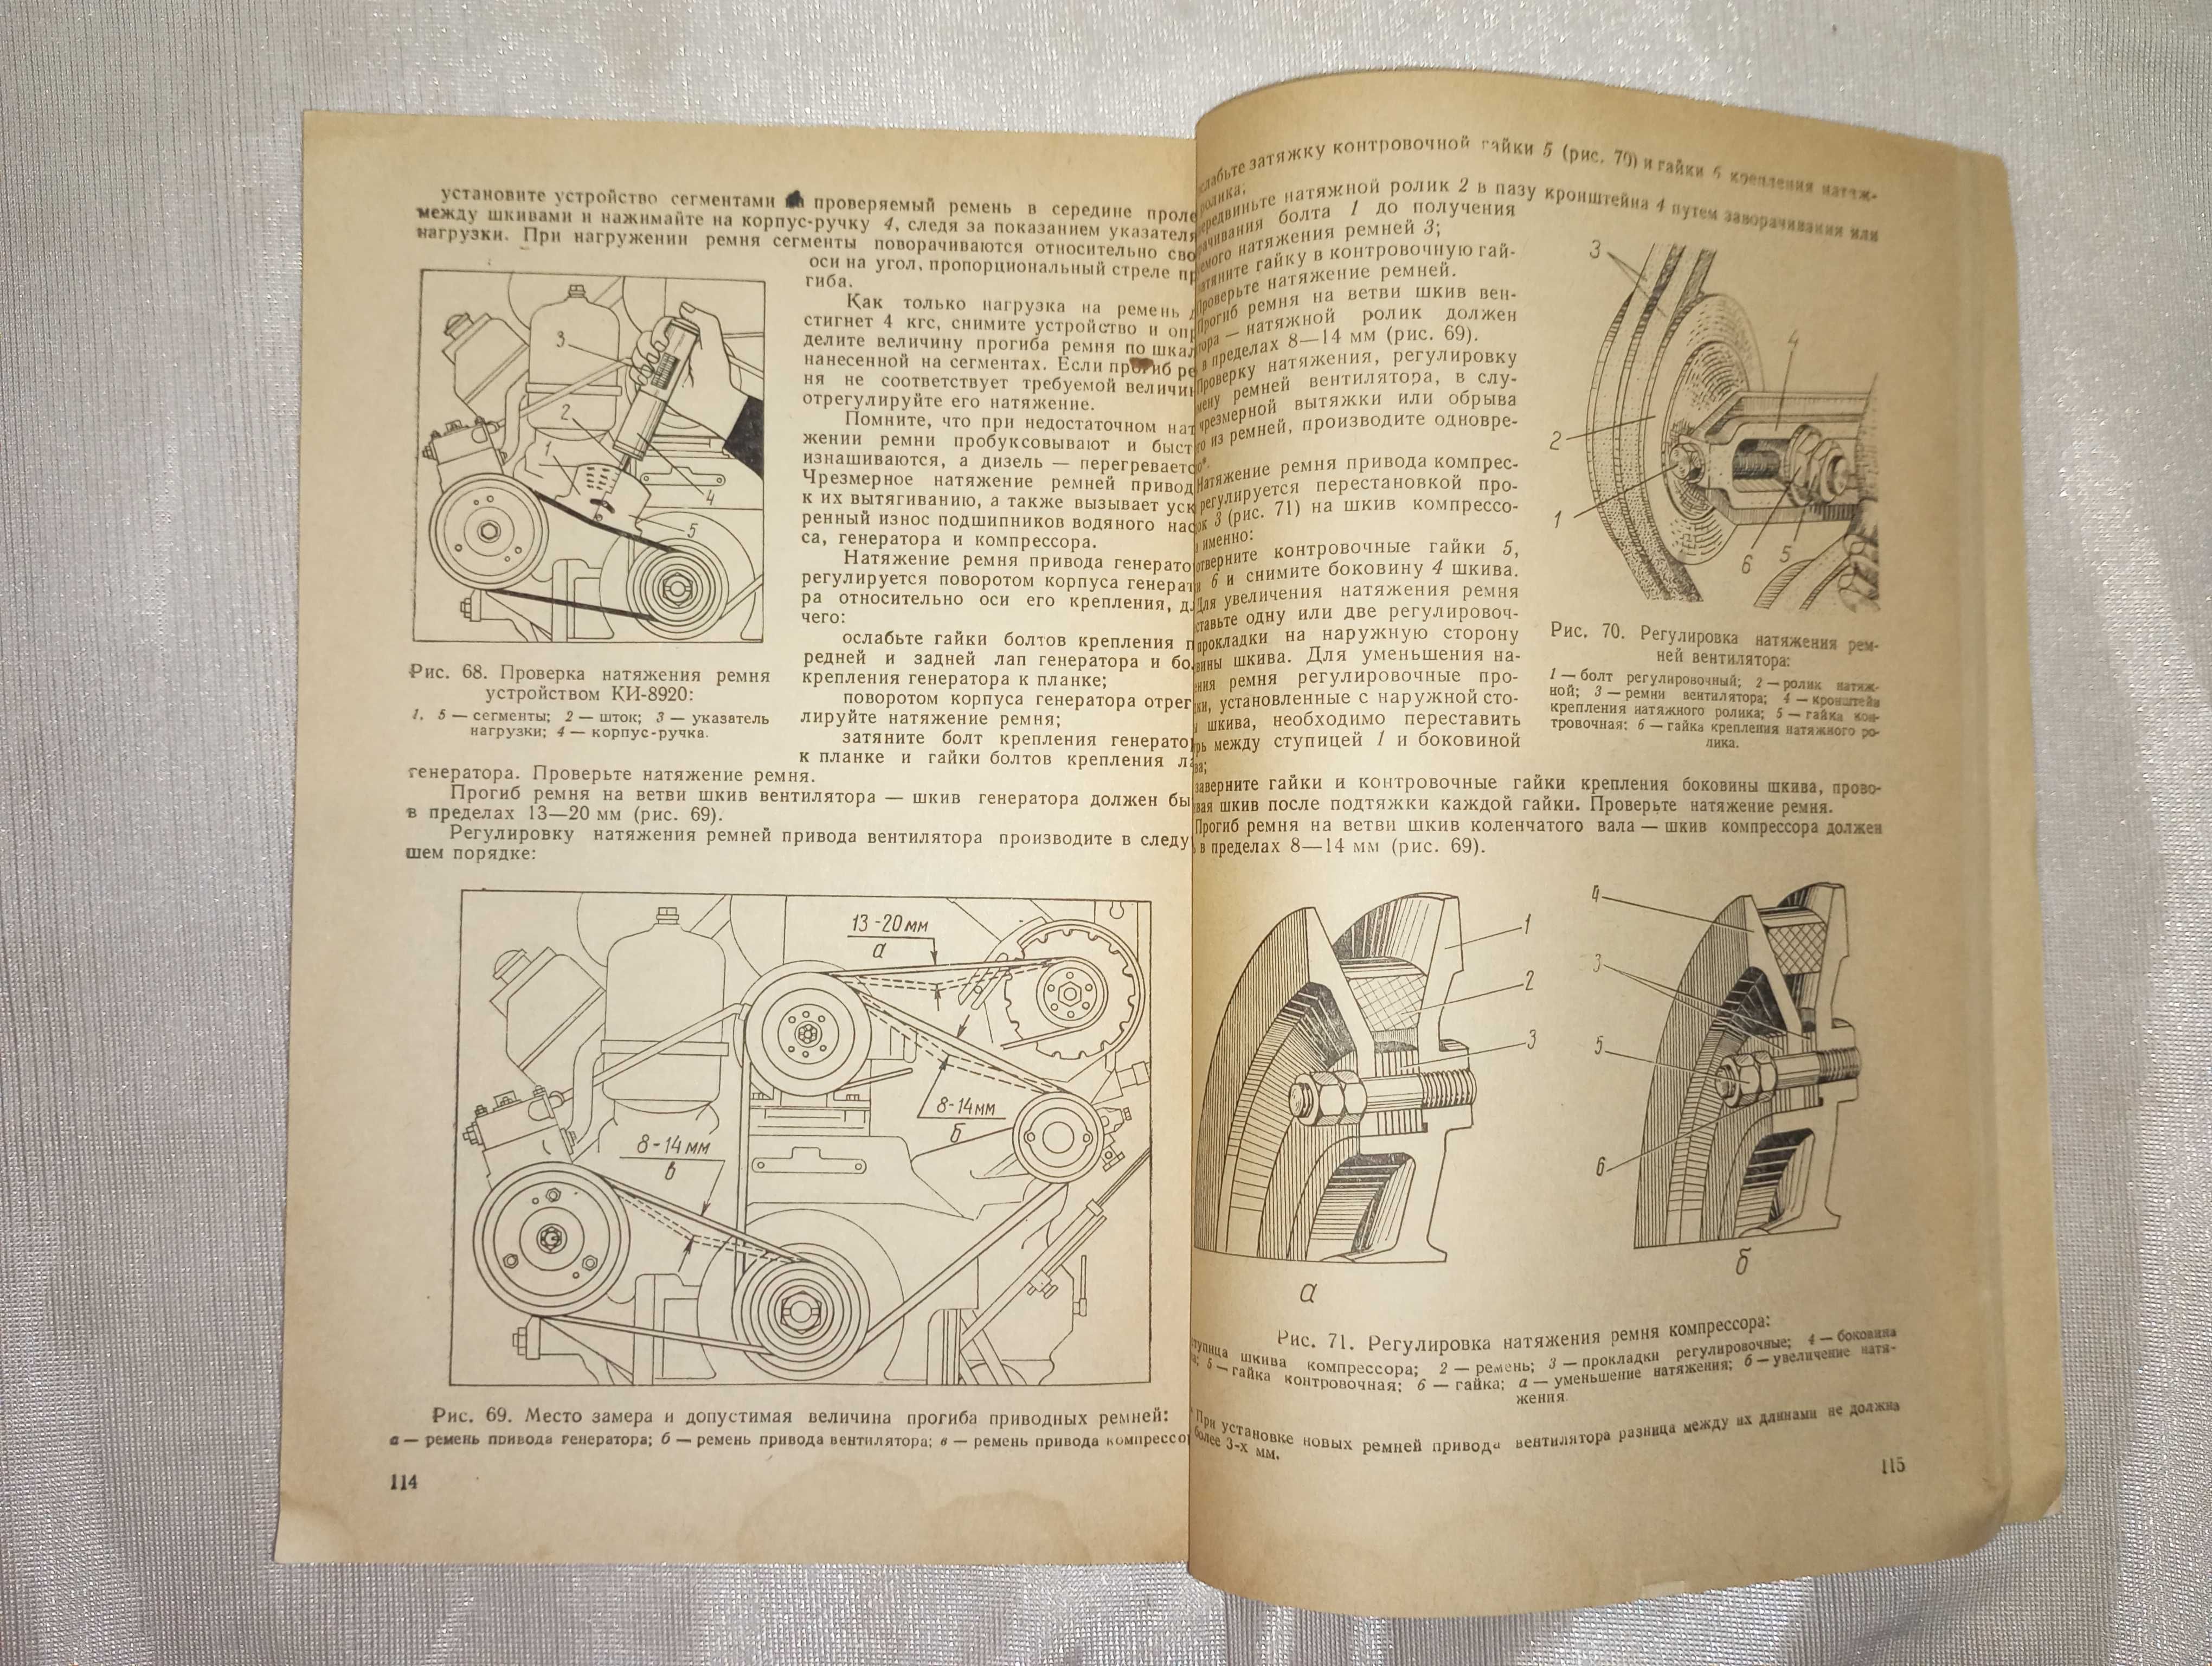 Книга Дизель СМД 60 техническое описание и инструкция по эксплуатации